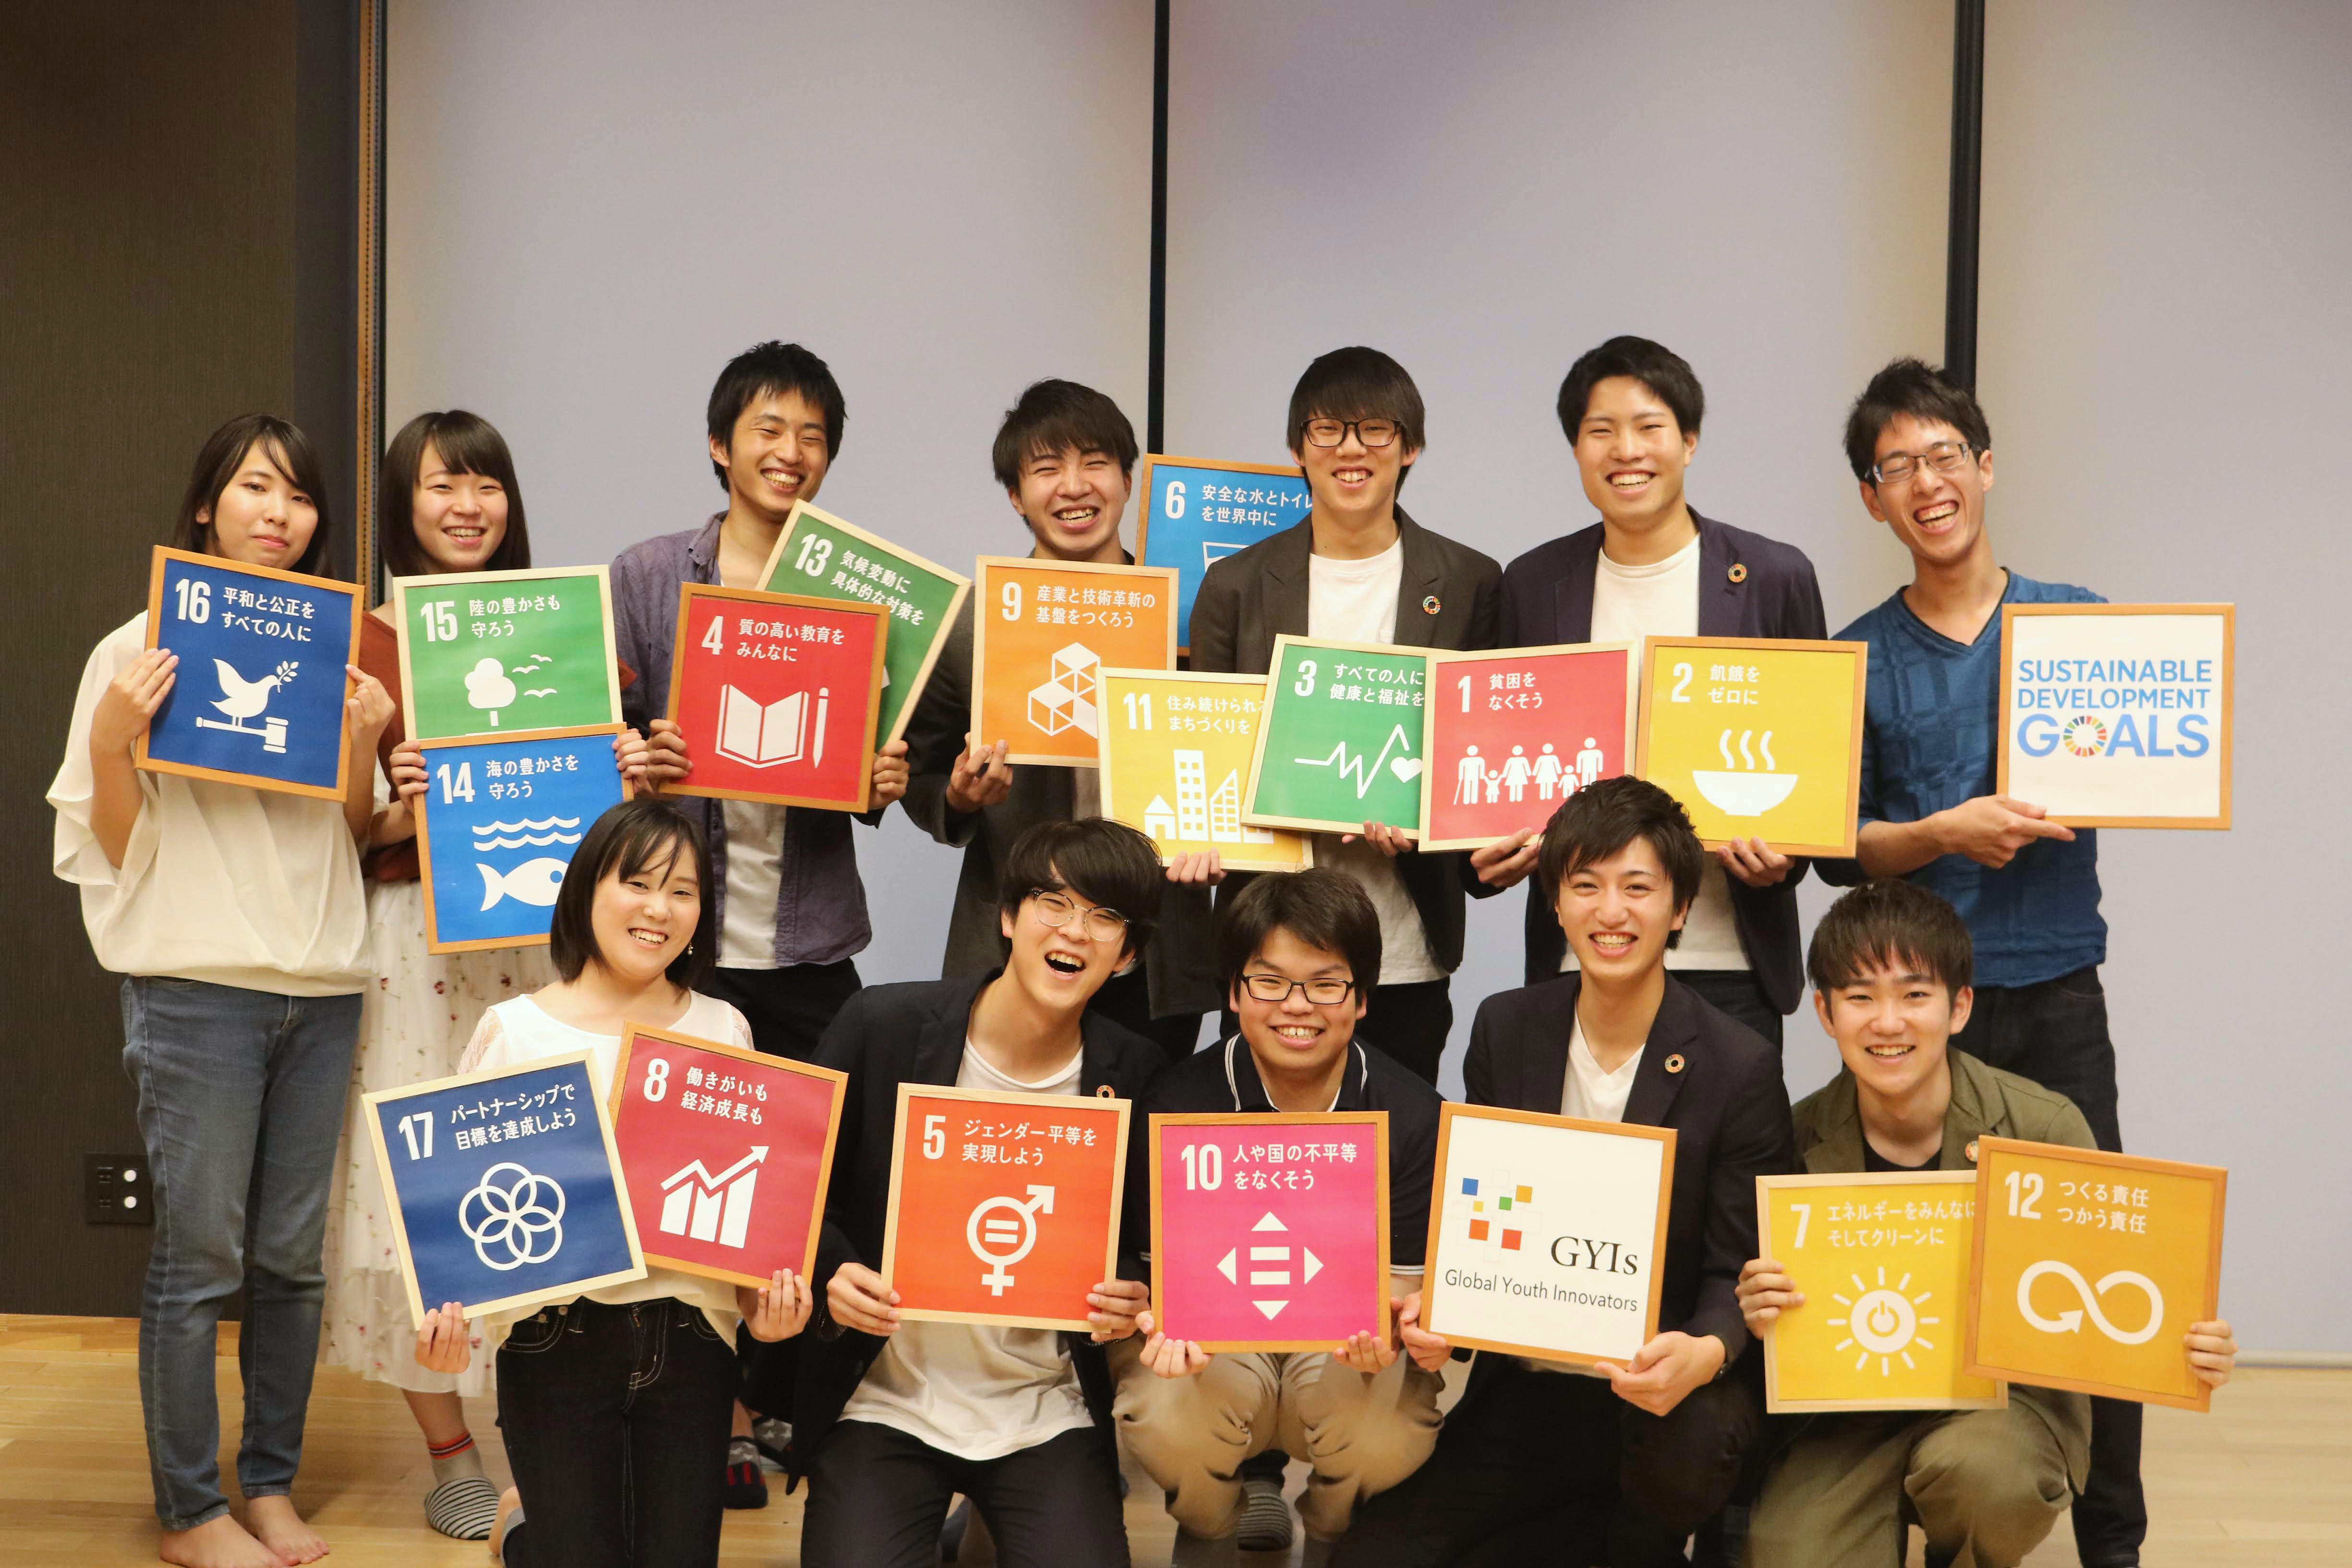 SDGsの教材を展開する金沢工業大学の学生団体が、「STAY HOME for SDGs～おうちで取り組む17日間SDGsチャレンジ～」を開発。